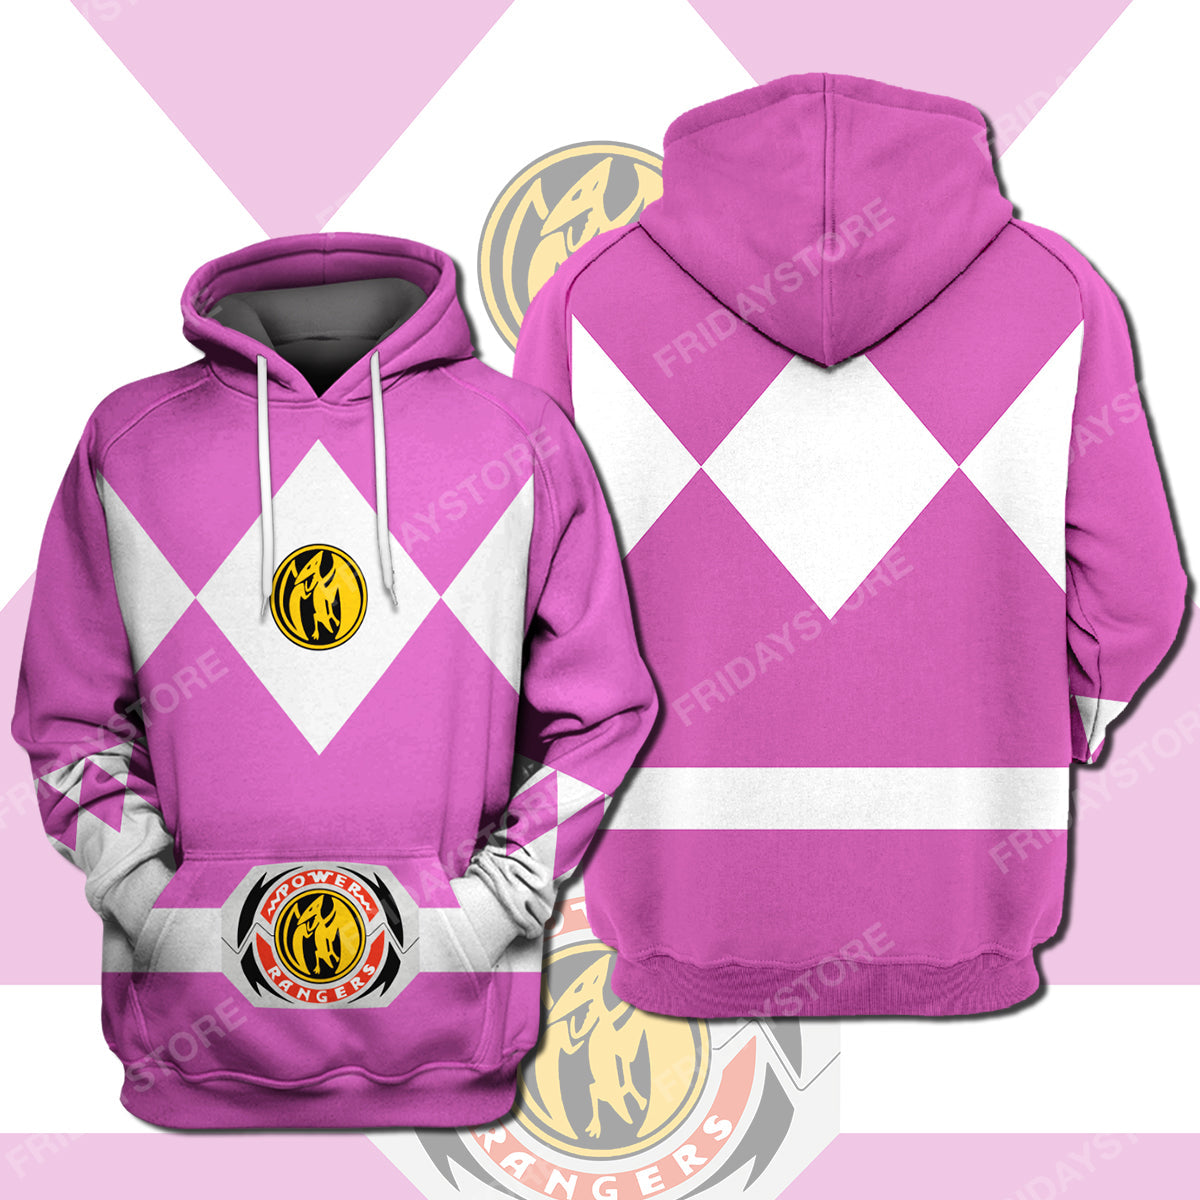 Unifinz Power Ranger T-shirt Pink Power Ranger Costume T-shirt Awesome Power Ranger Hoodie Sweater Tank 2022